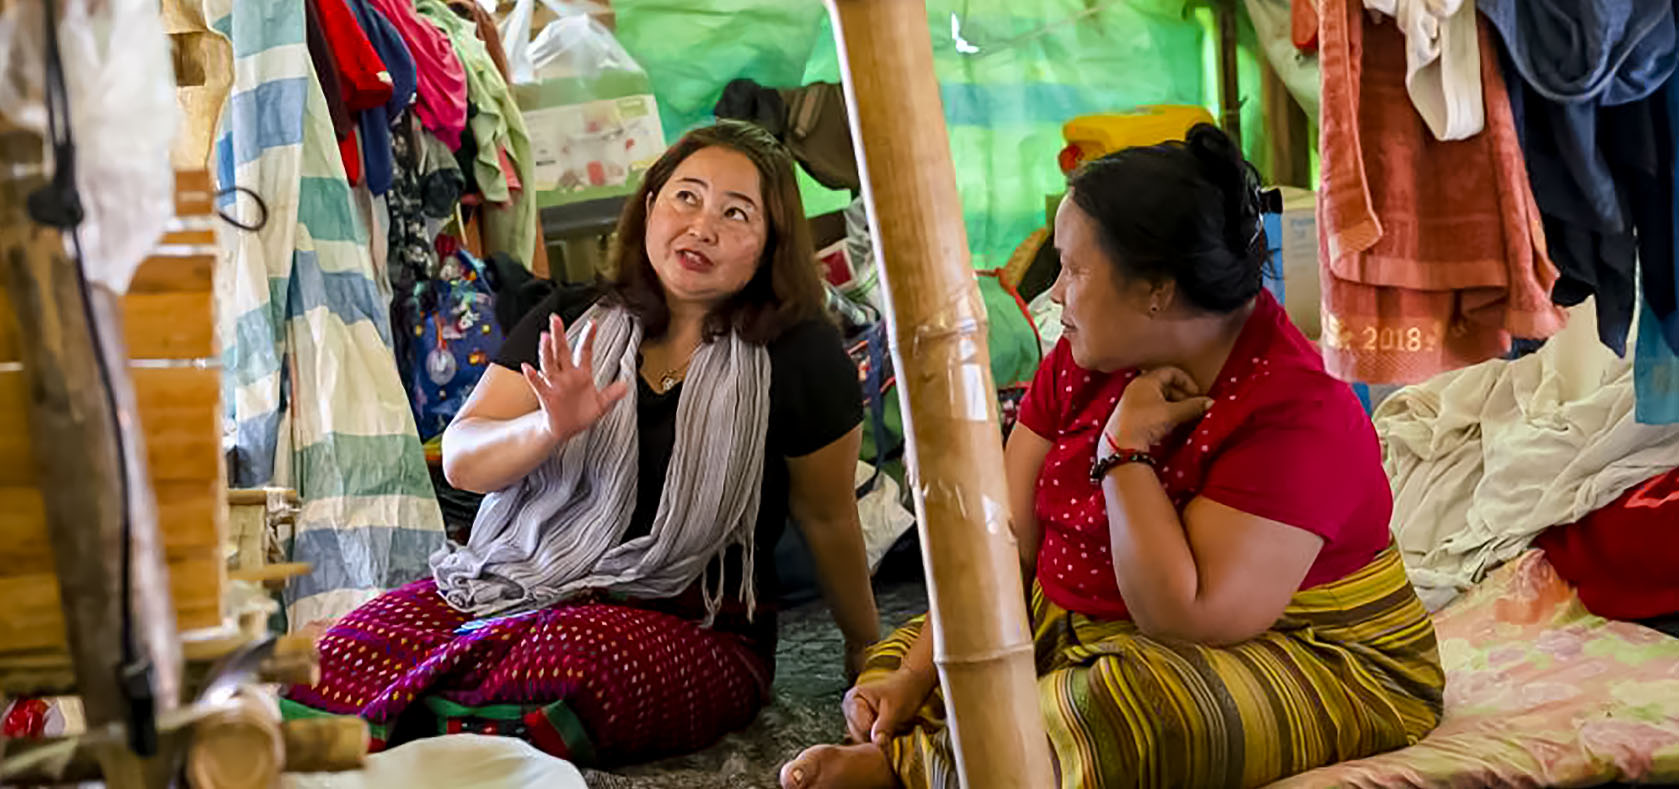 Meikswe Myanmar founder Naw Bway Khu. Photo: UNHCR/Hkun Ring